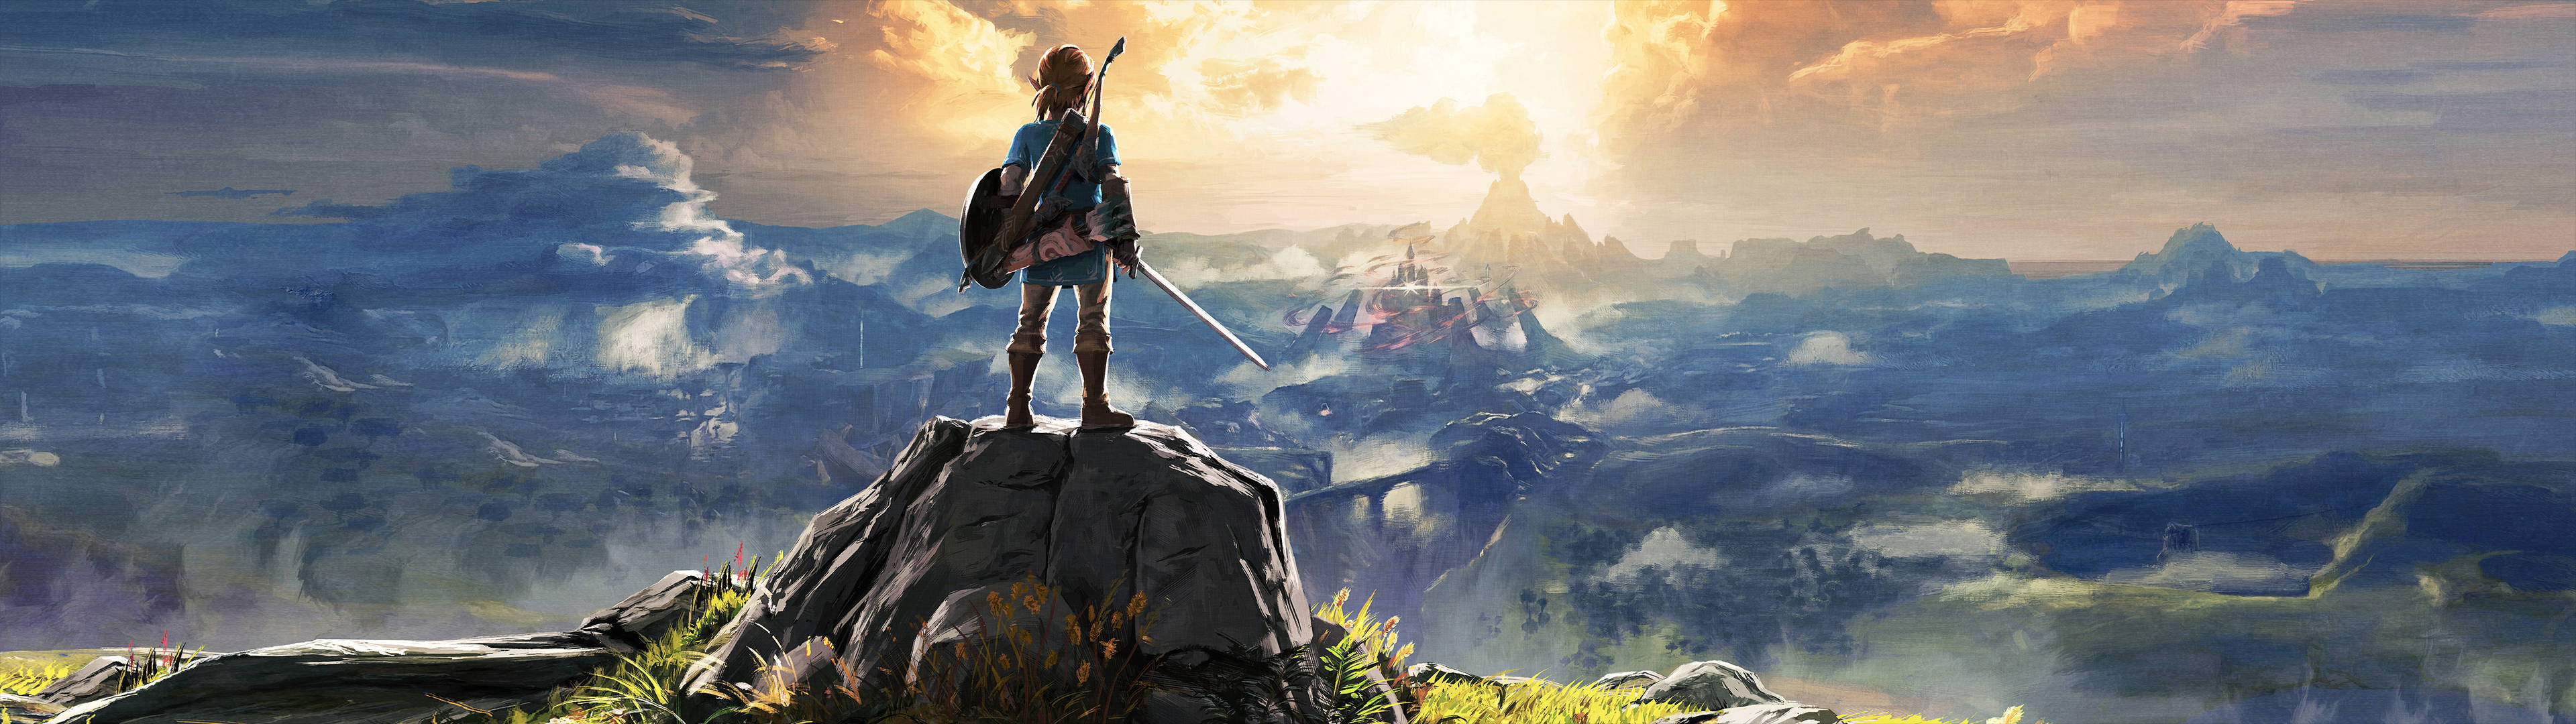 Link Legend Of Zelda Three Screen Wallpaper